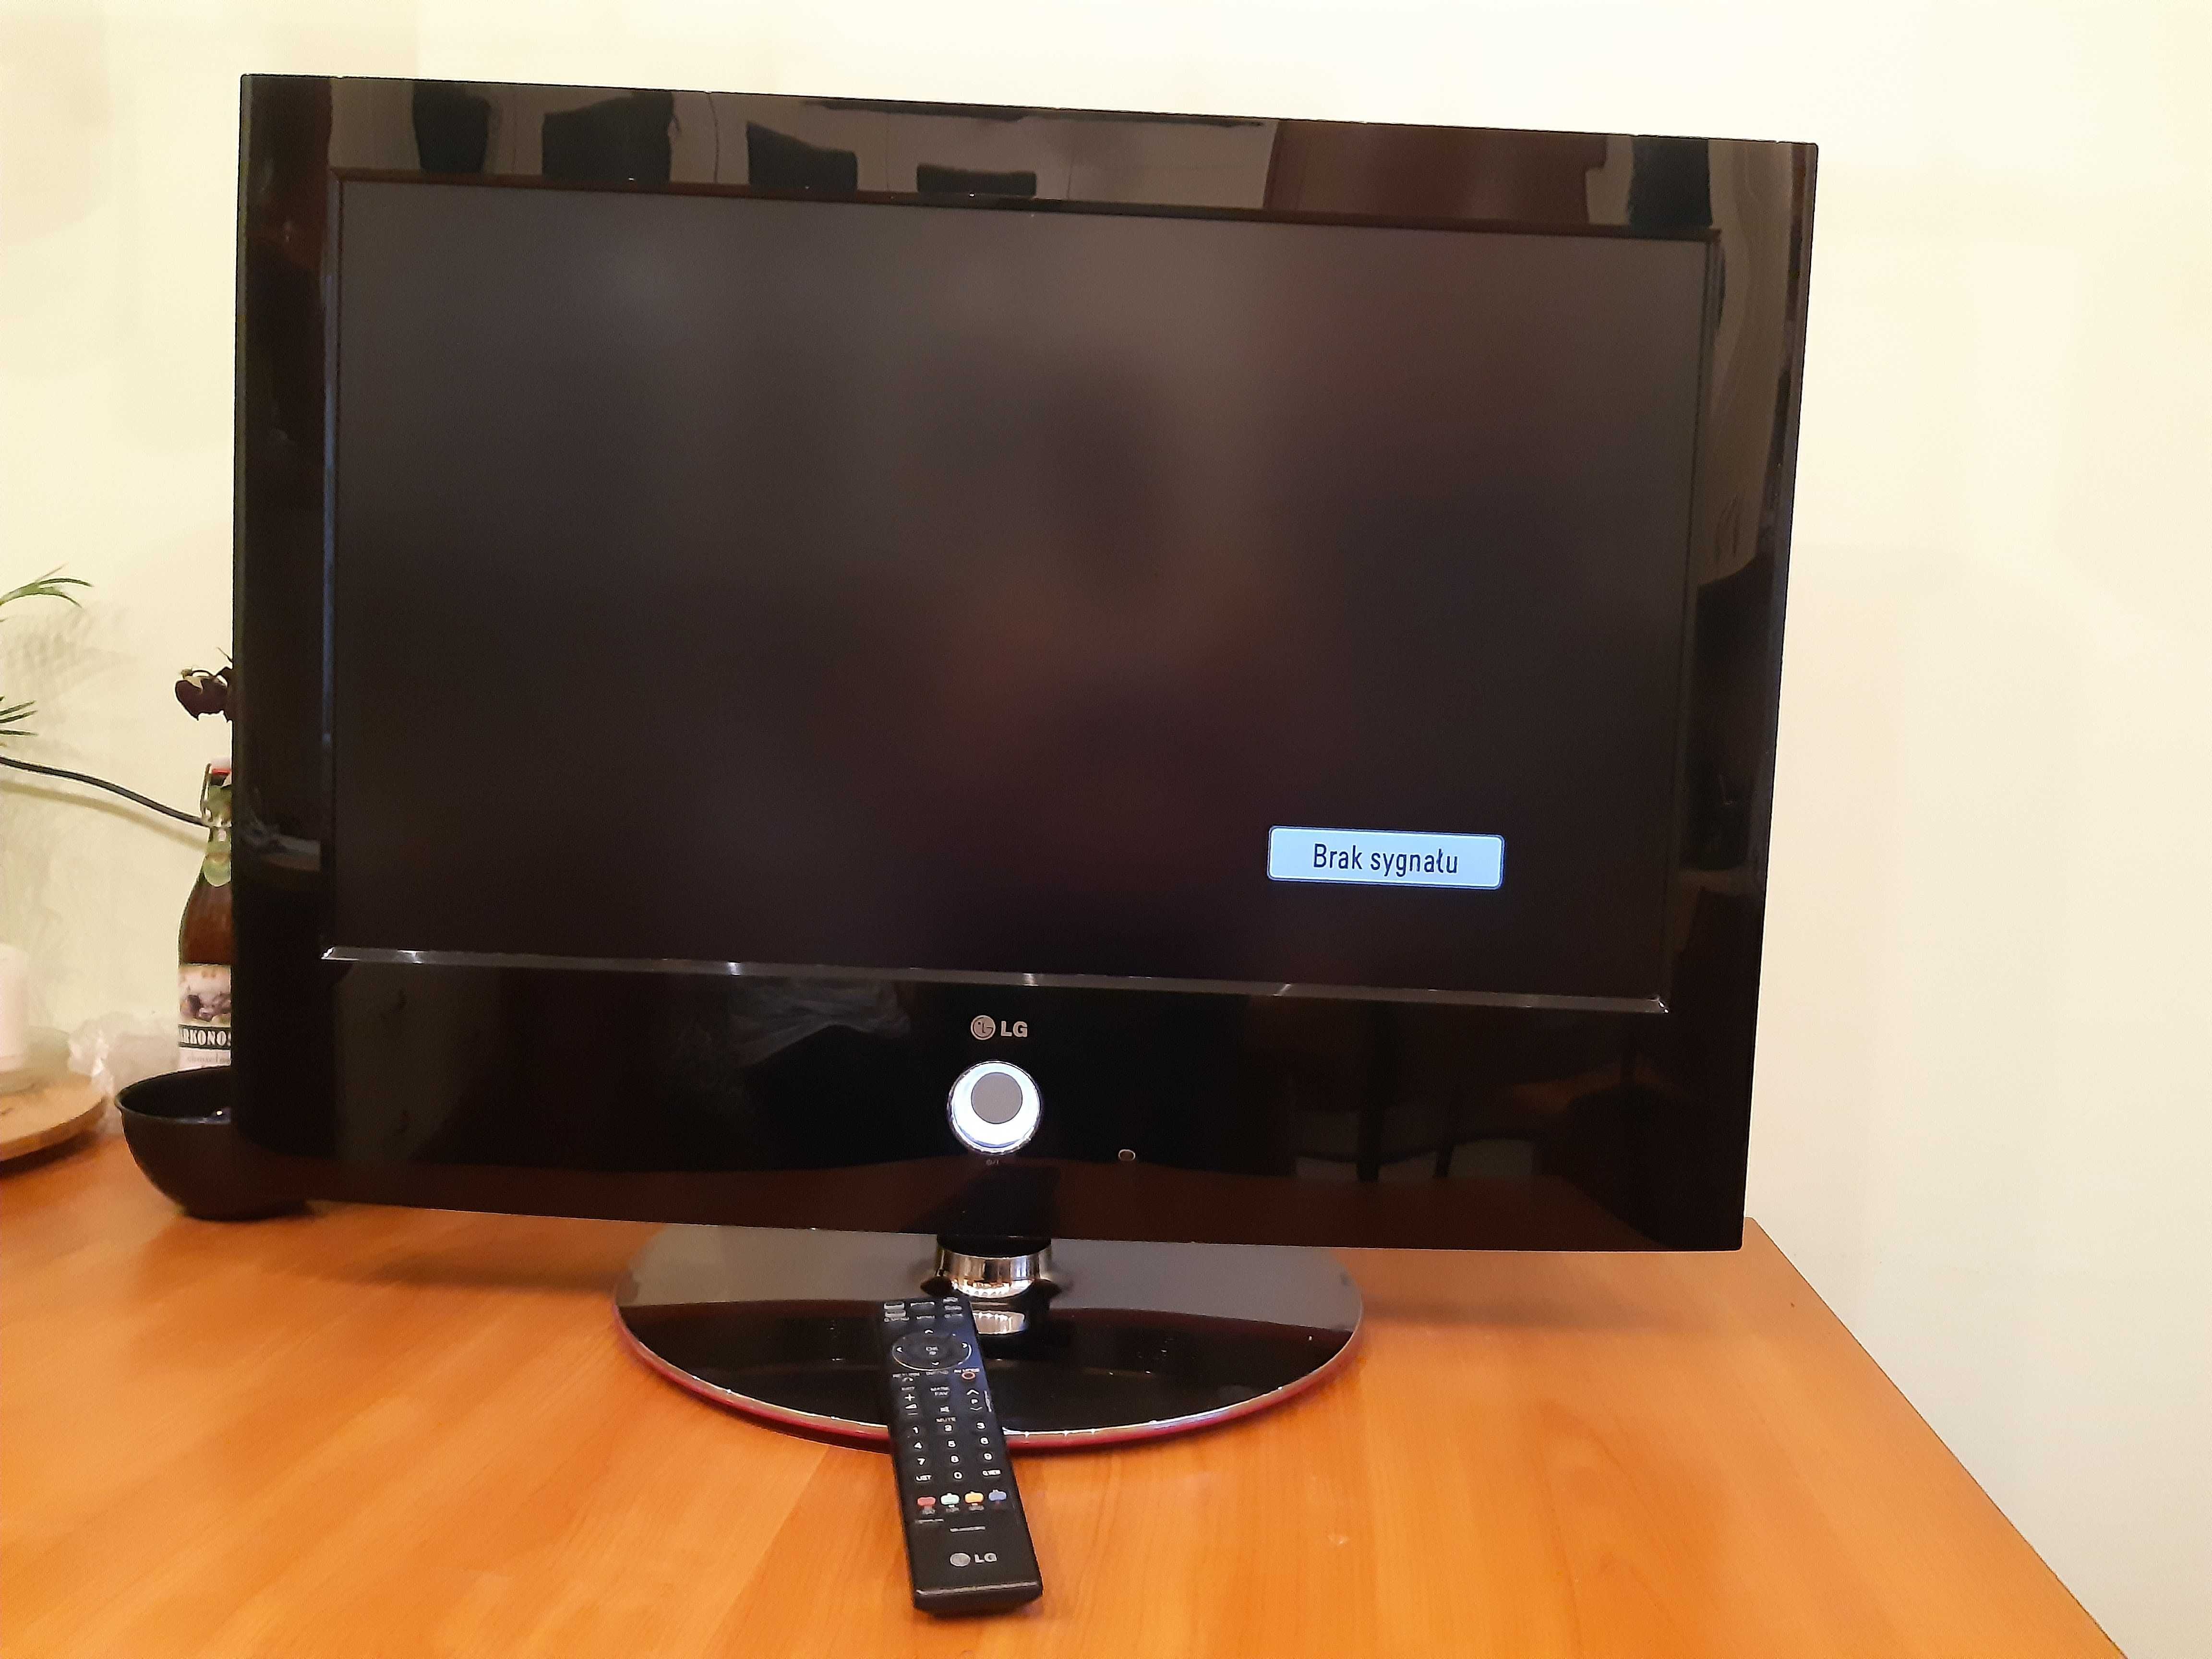 Telewizor LCD 32 cale LG, szeroki kąt widzenia, dobry dzwięk